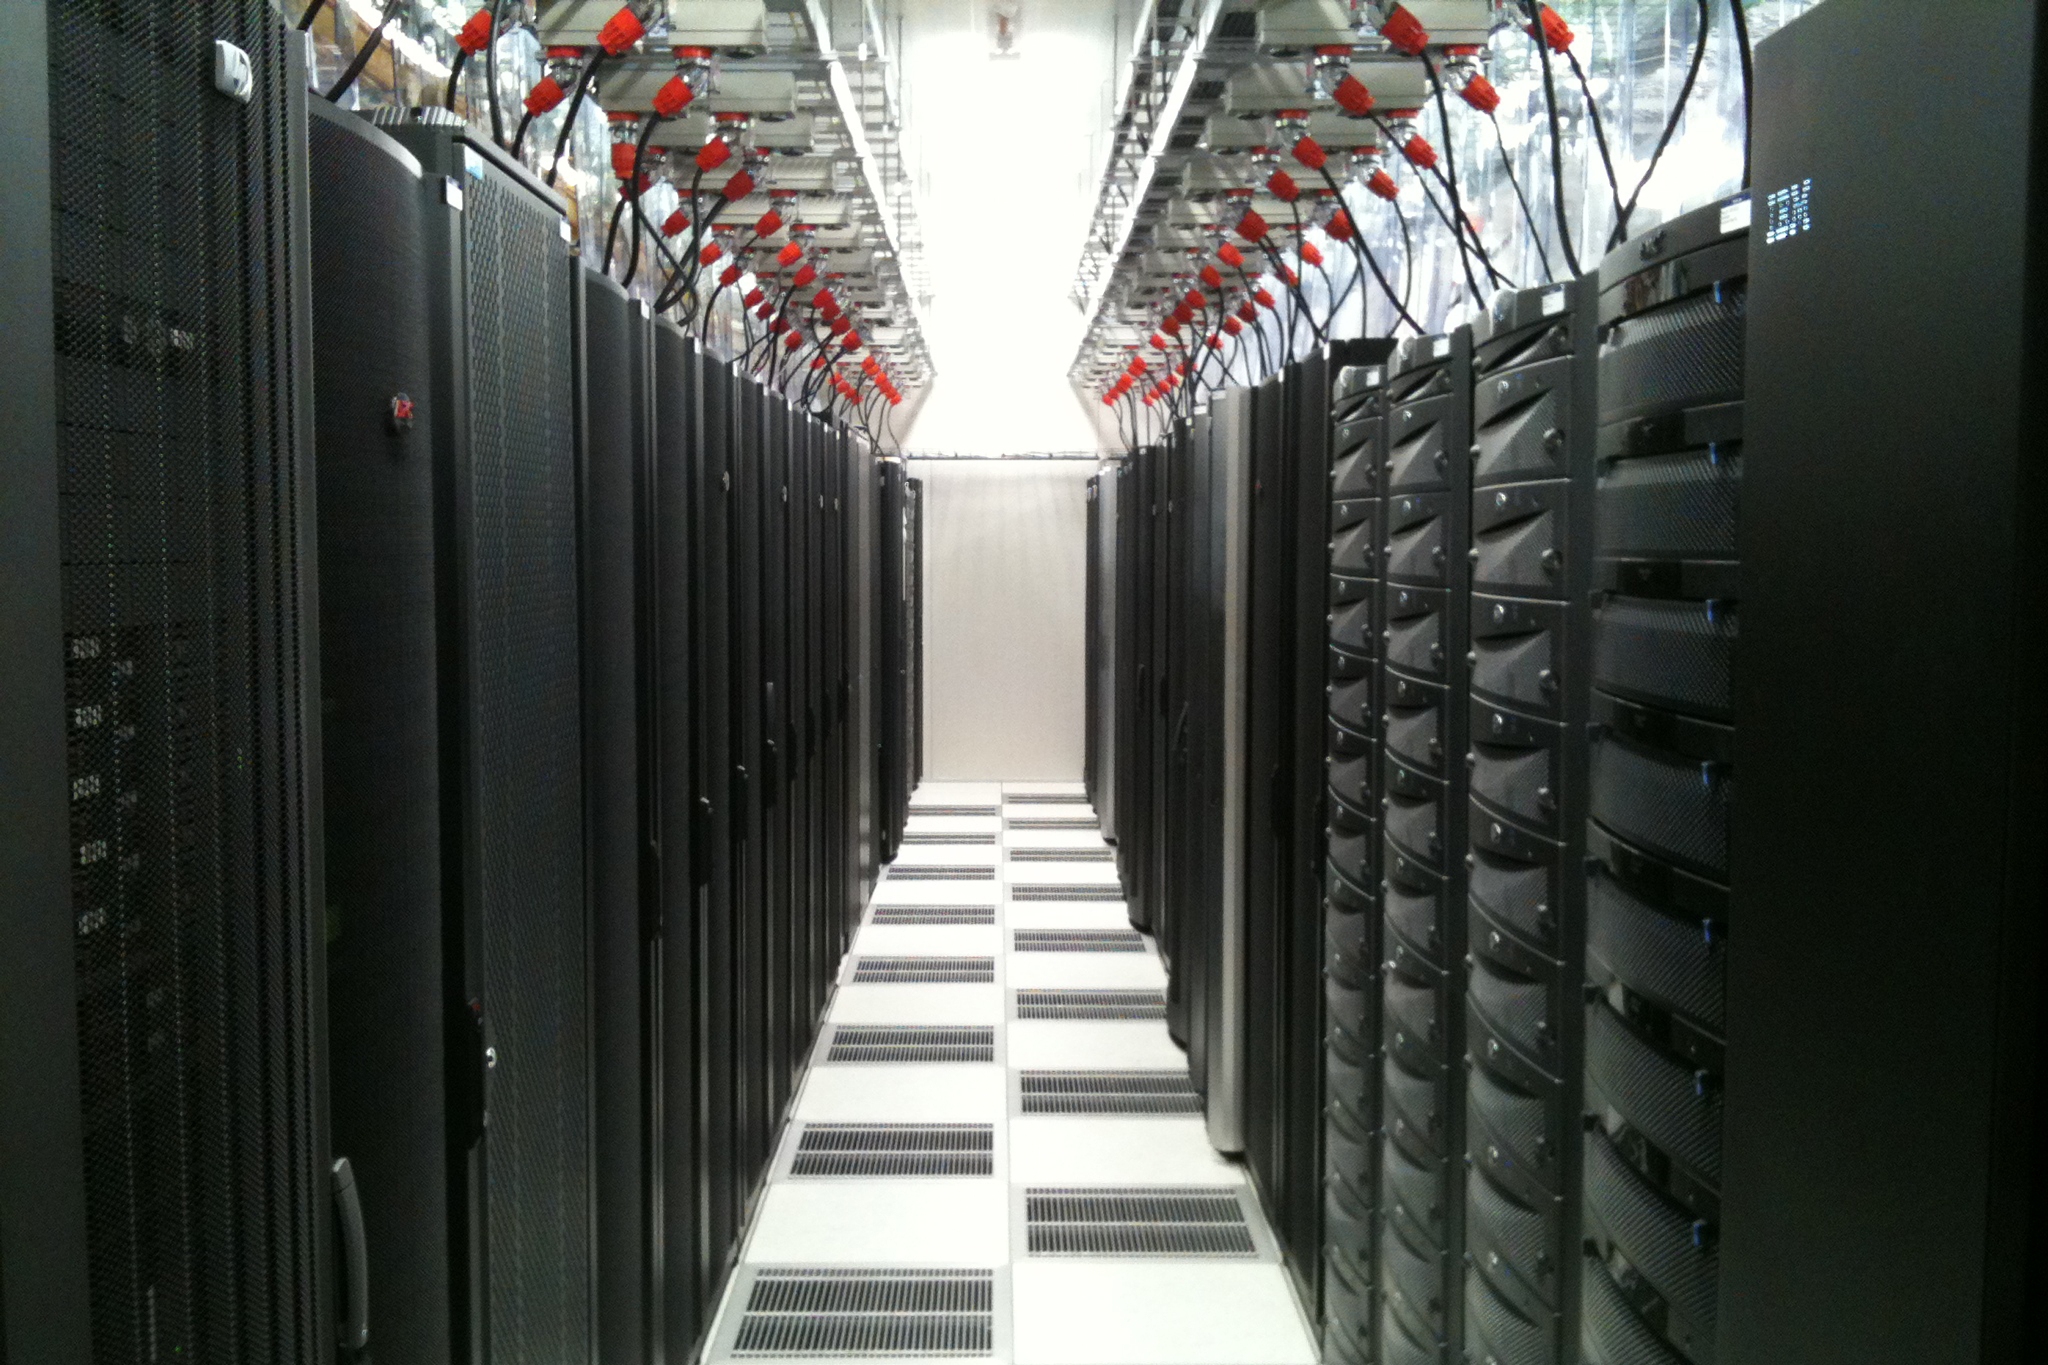 06 - Data Center.jpg